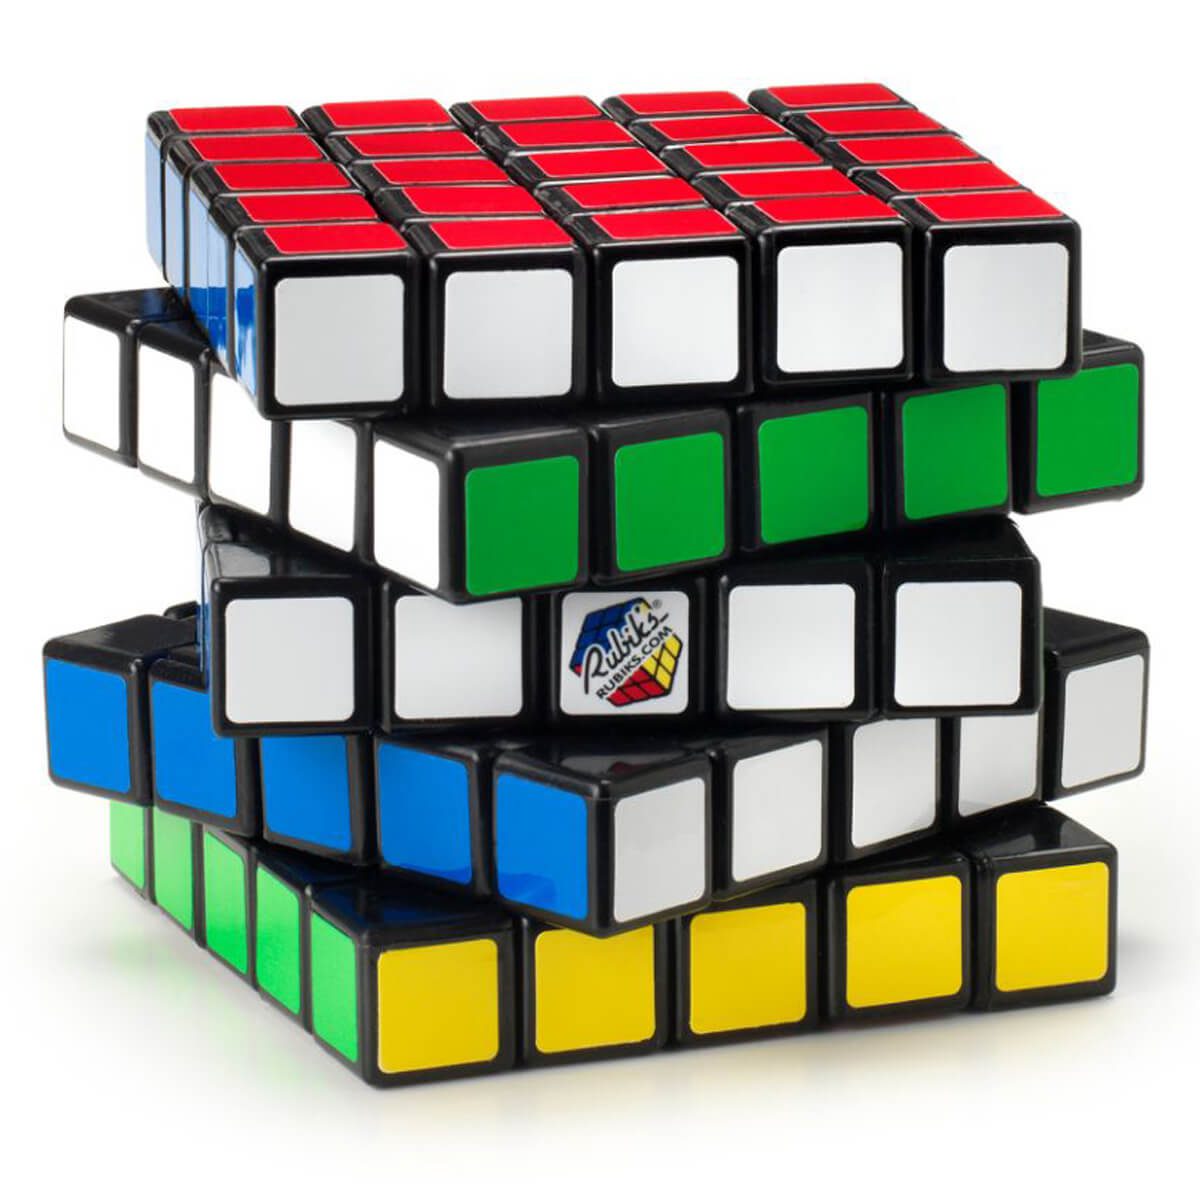 Rubik’s Cube jouet de résolution de problème très complexe Puzzle de correspondance de couleurs 5x5 Professor’s Cube avec son Guide de poche 